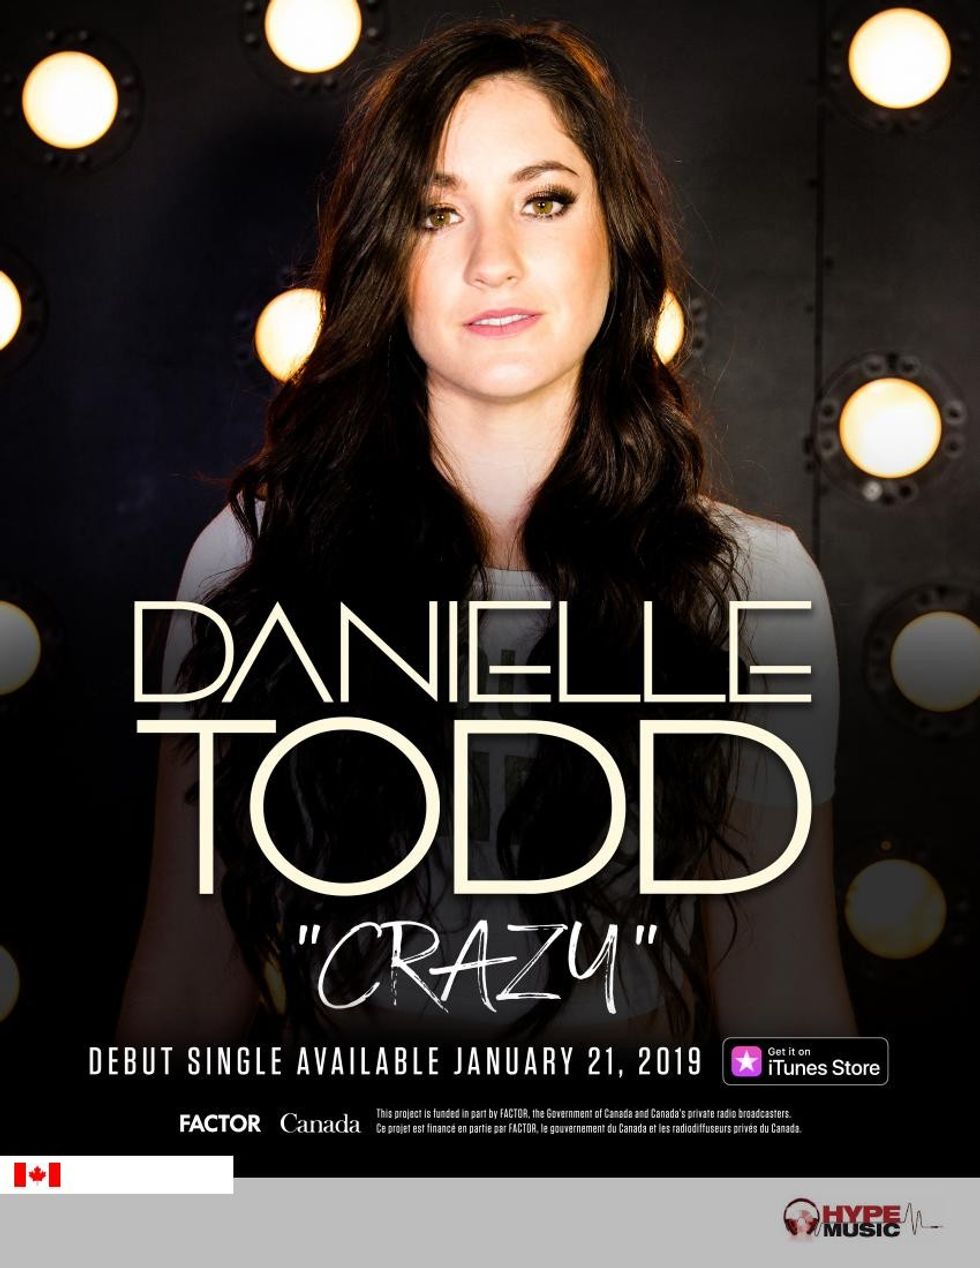  Danielle Todd: Crazy